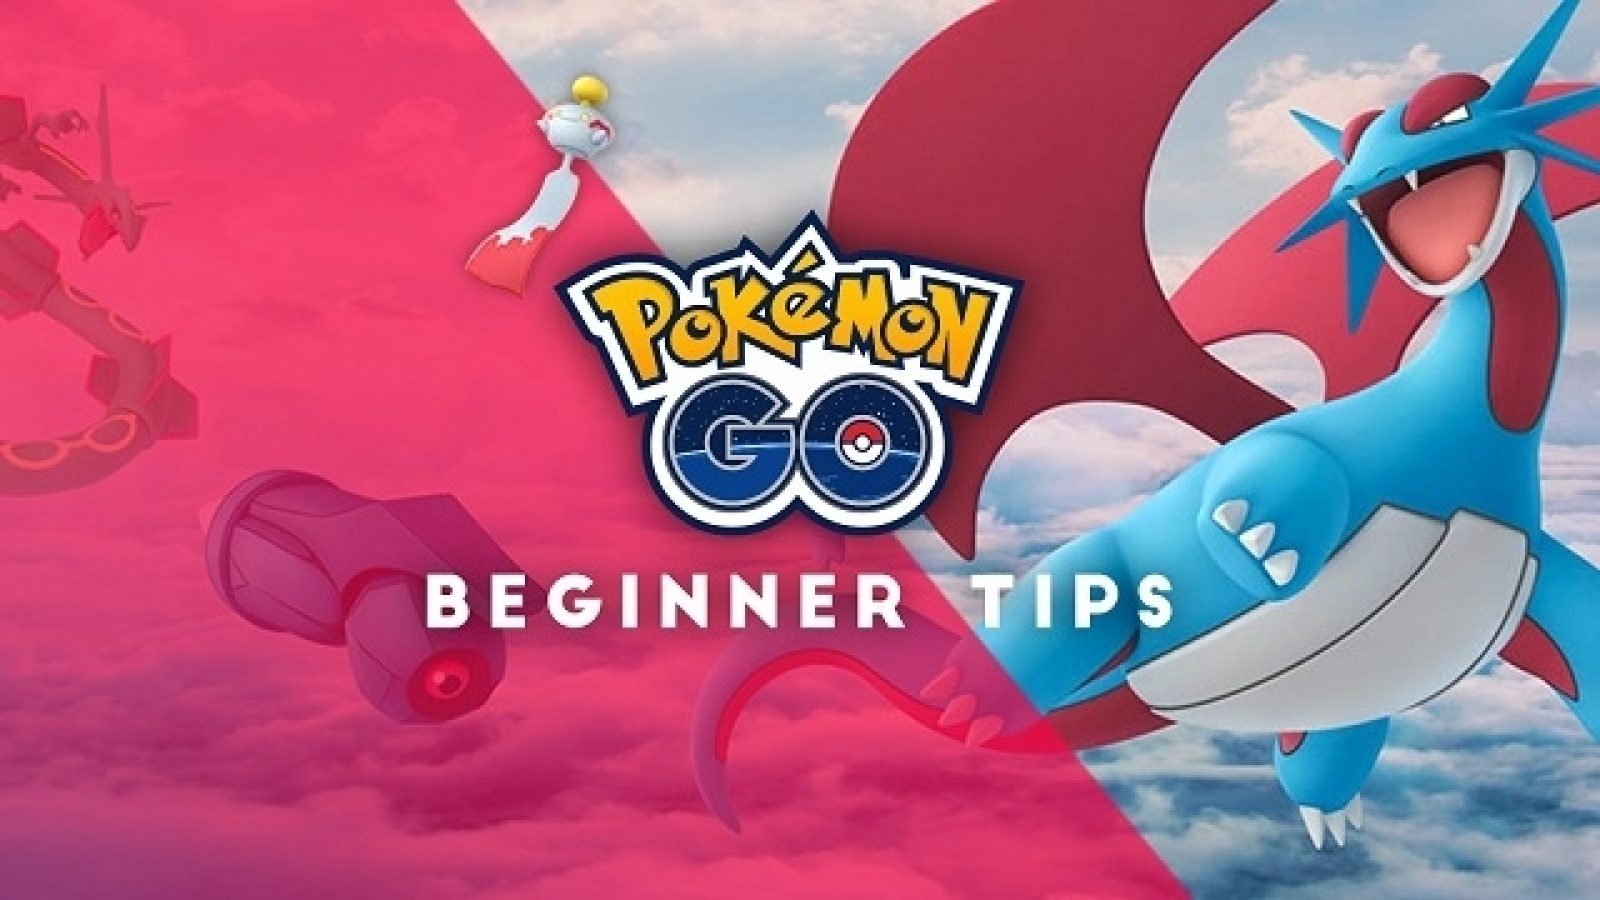 Pokemon: Let's Go Beginner's Guide, Tips and Tricks